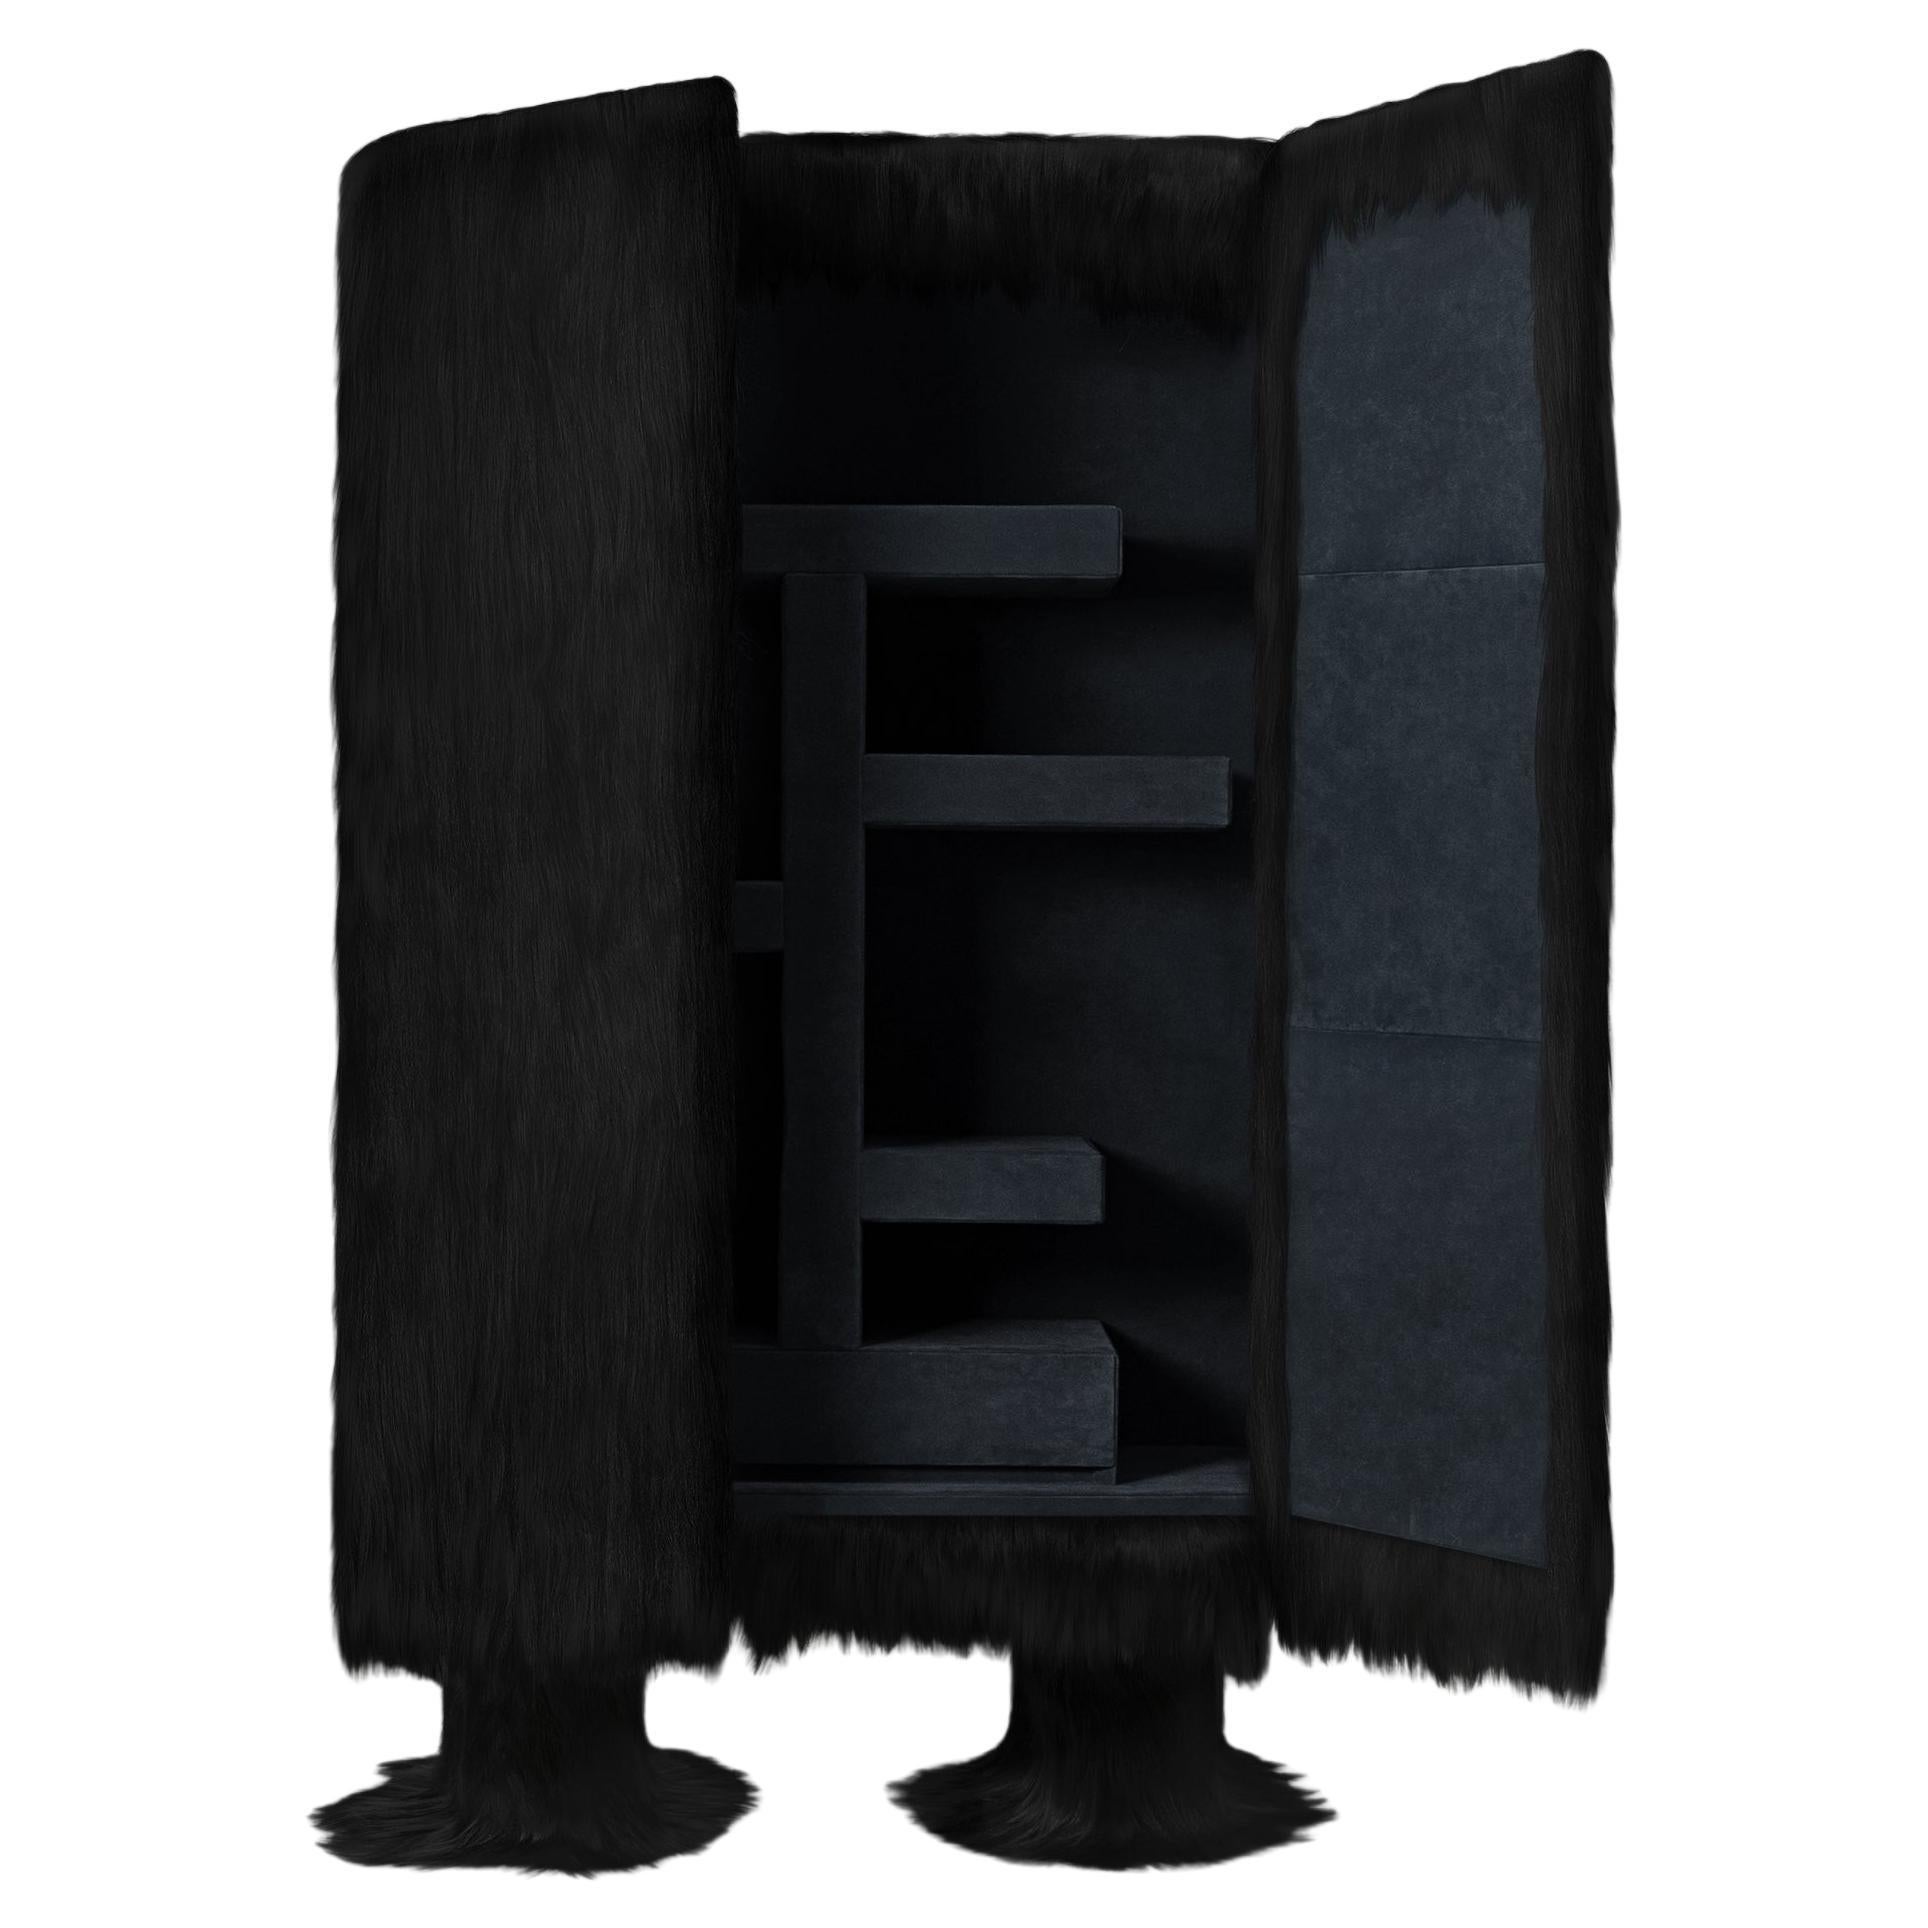 Schwarzer Rohschrank mit Möbelschrank aus Ziegenleder im Offcuts-Stil von Atelier V&F